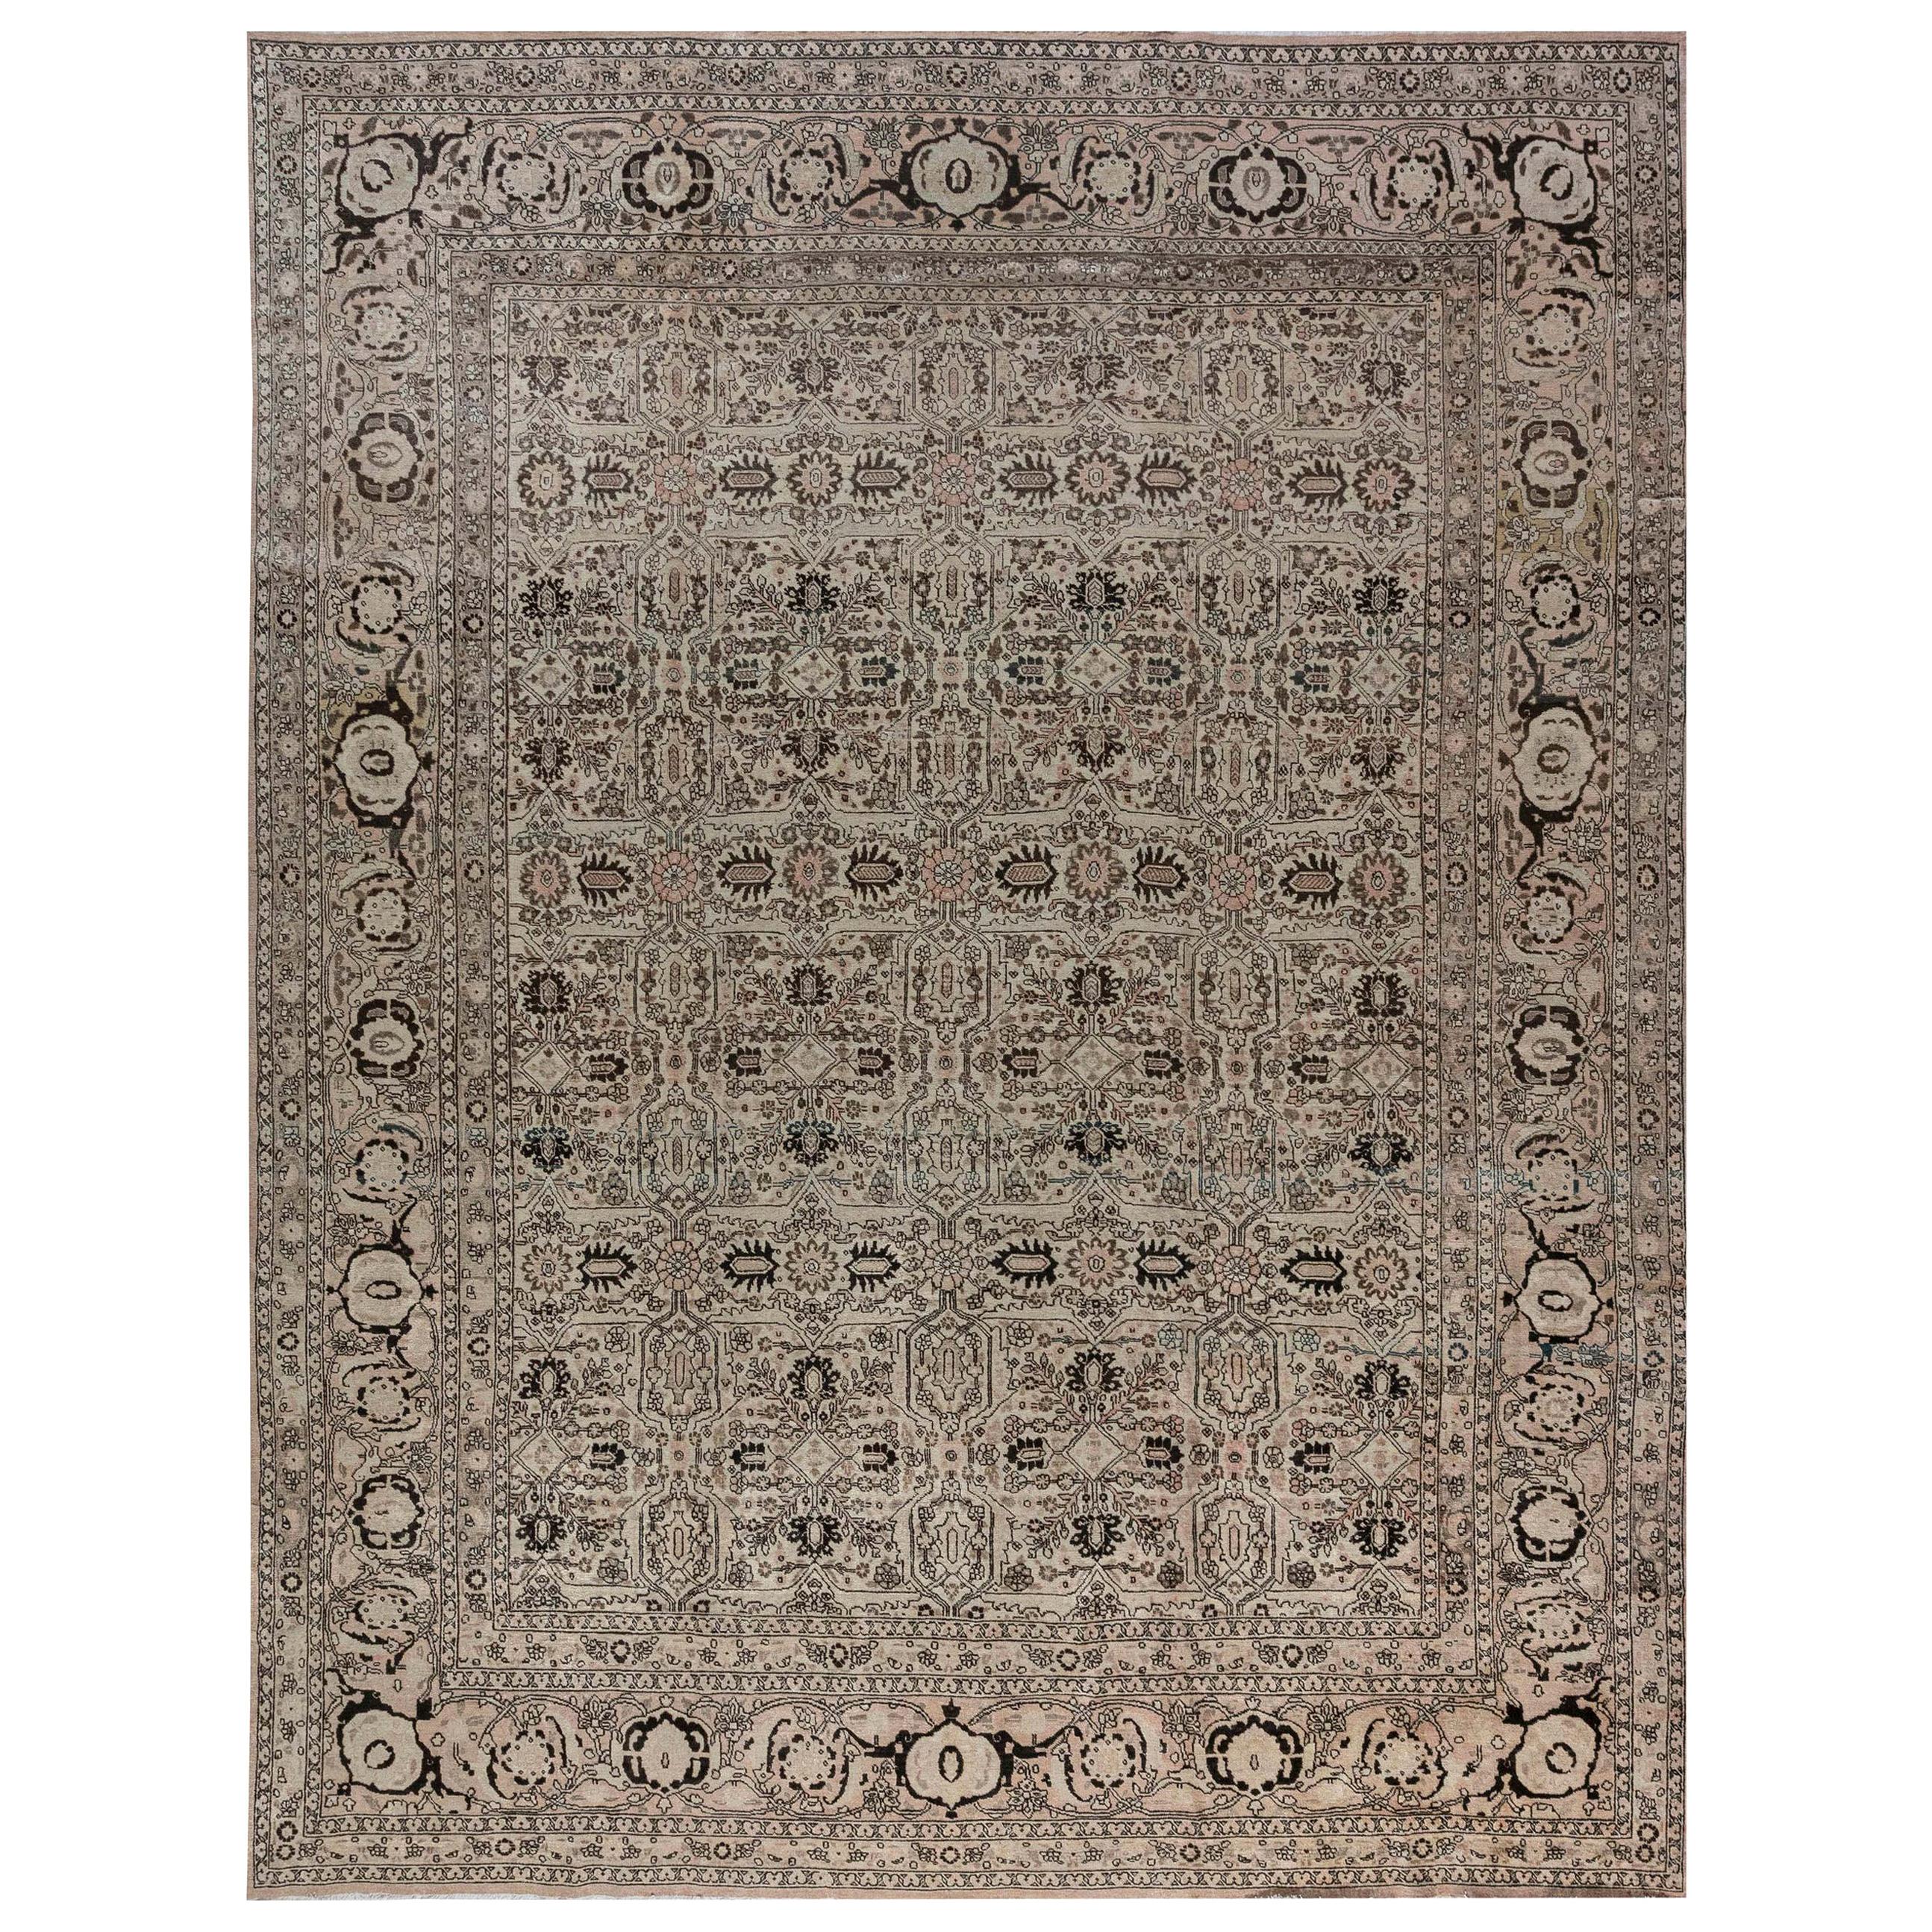 Authentique tapis persan Tabriz des années 1900 fait à la main